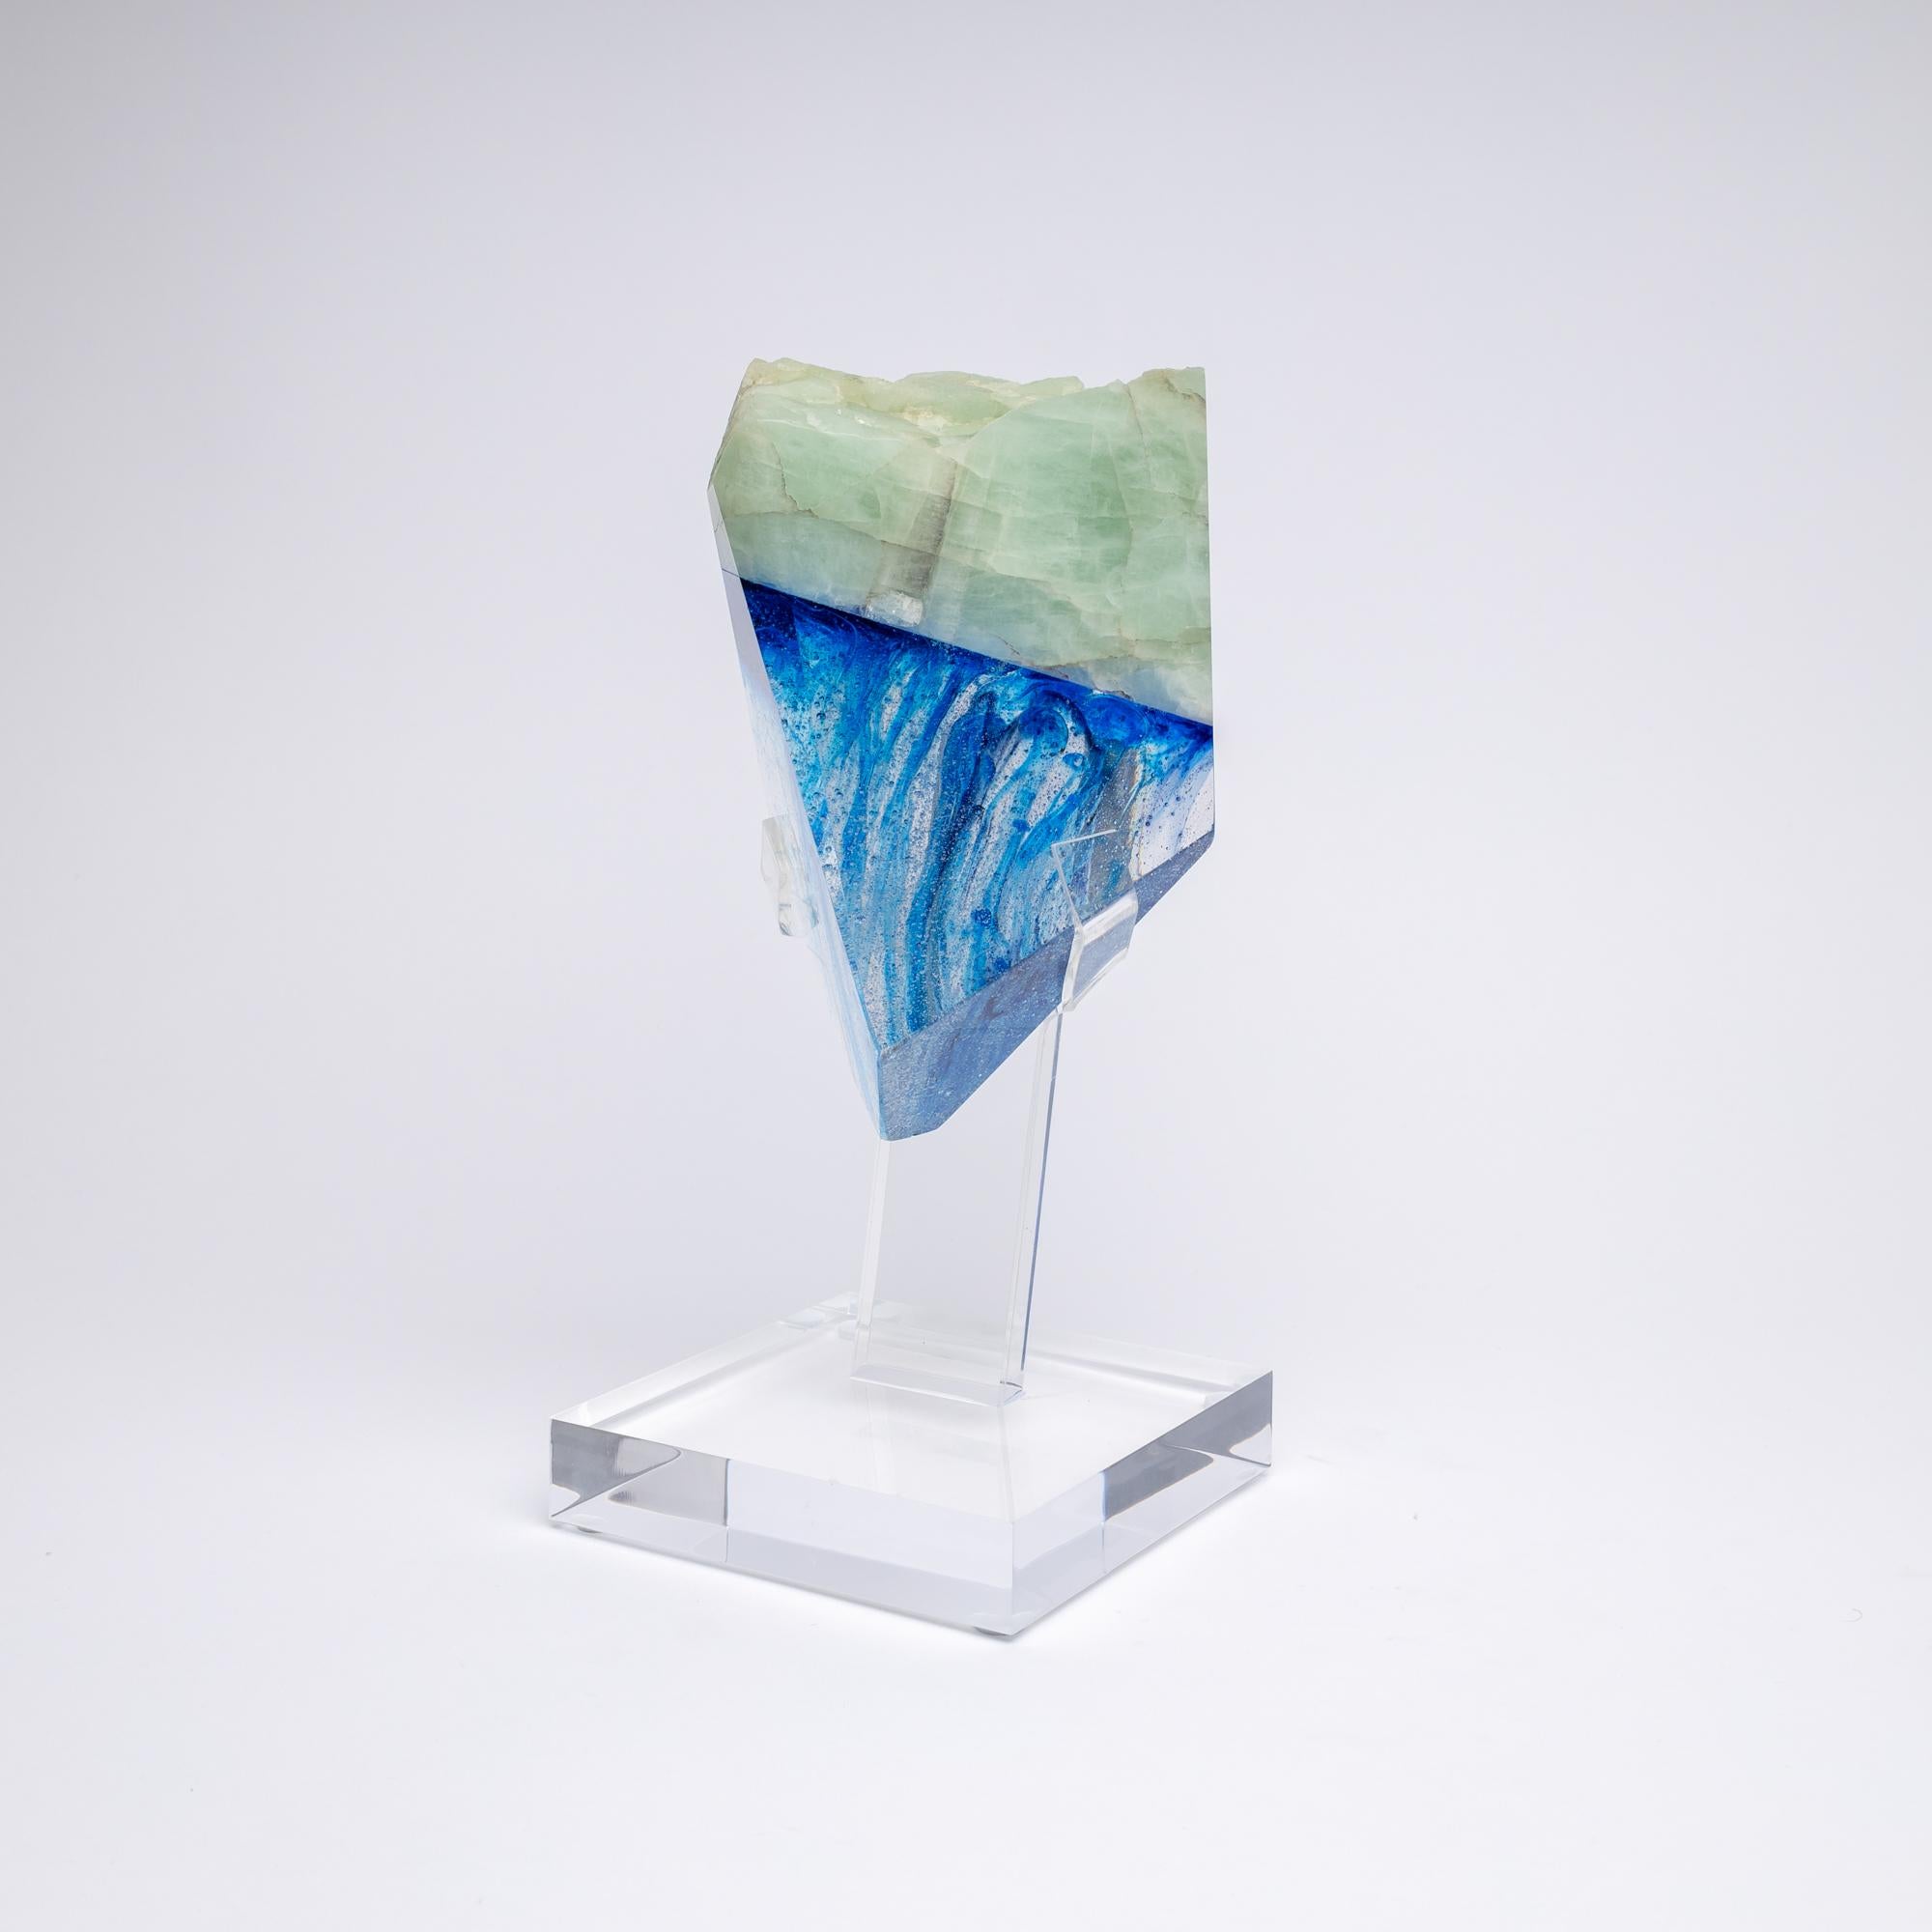 Maryne- Sculpture en verre brésilien, aigue-marine et teinte bleue, de la collection TYME, une collaboration d'Orfeo Quagliata et Ernesto Durán.

Collection TYME 
Une danse entre la pureté et le détail donne lieu à la création de pièces uniques